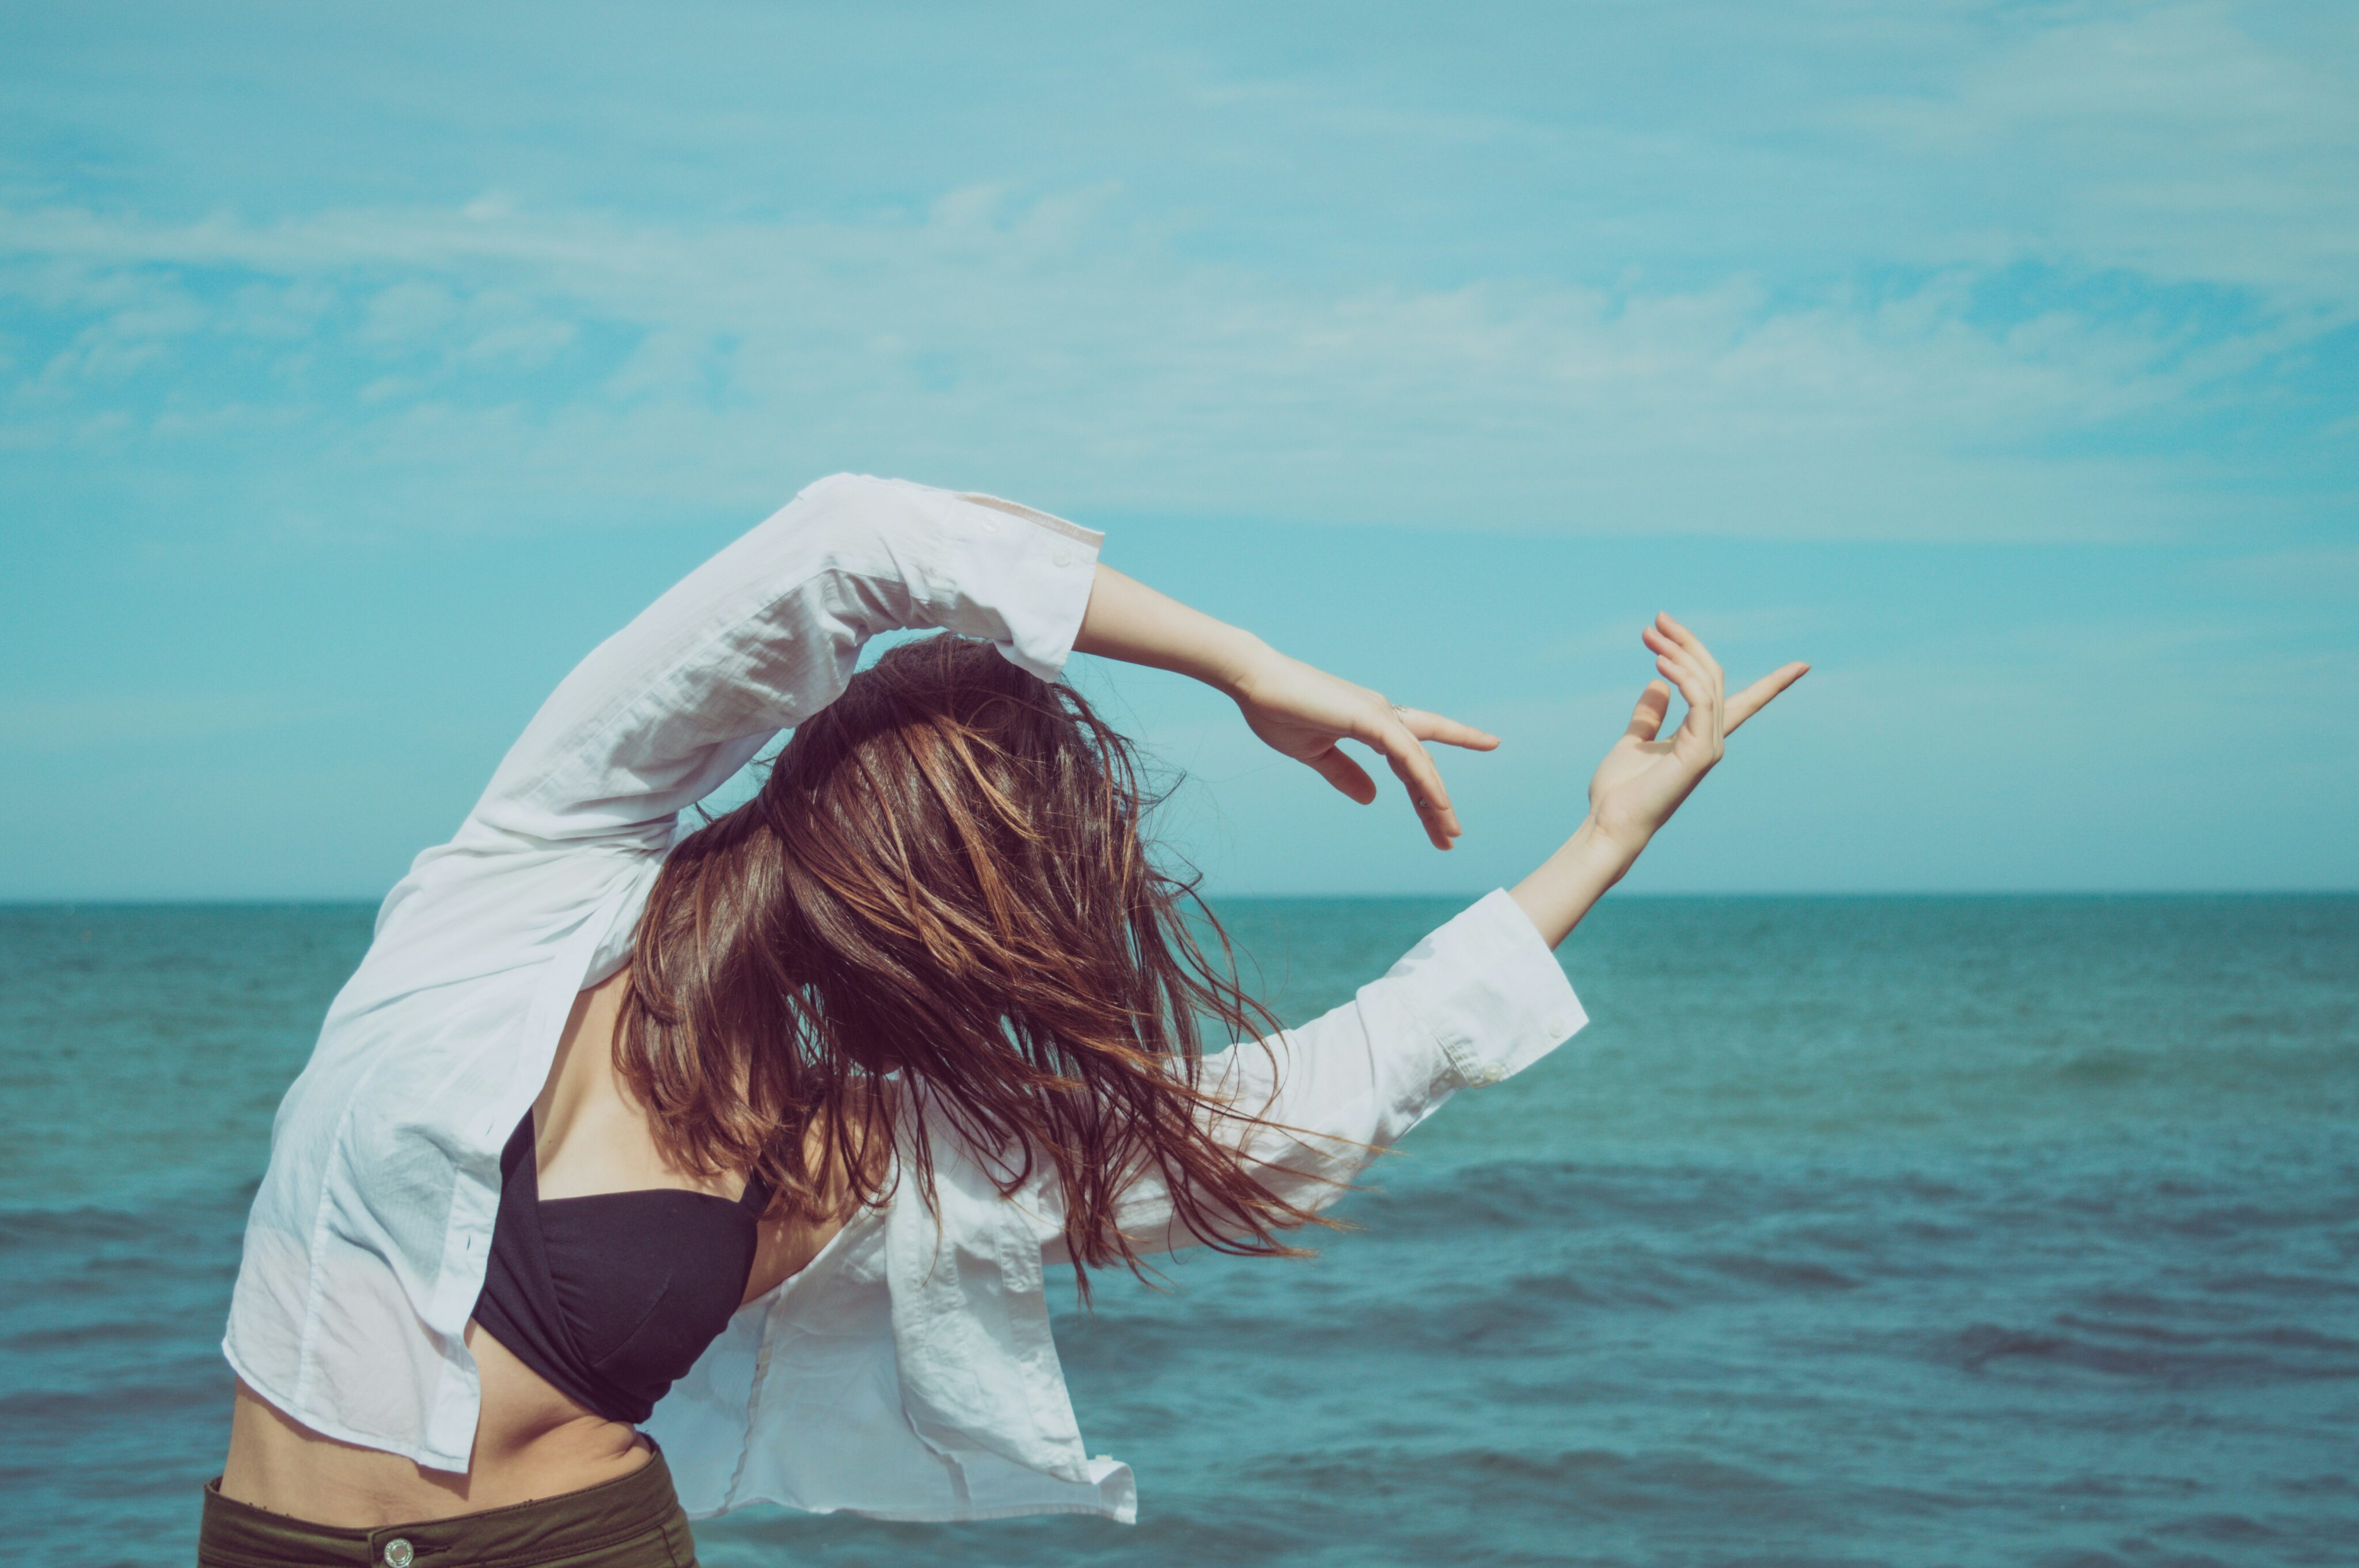 Tanzen Übergewicht: Frau in Bewegung am Strand, gestikuliert tanzend mit ausgestreckten Armen gegen den Hintergrund des Meeres, ein inspirierendes Bild, das den positiven Einfluss von Tanzen auf die körperliche Aktivität und das Gewichtsmanagement hervorhebt.